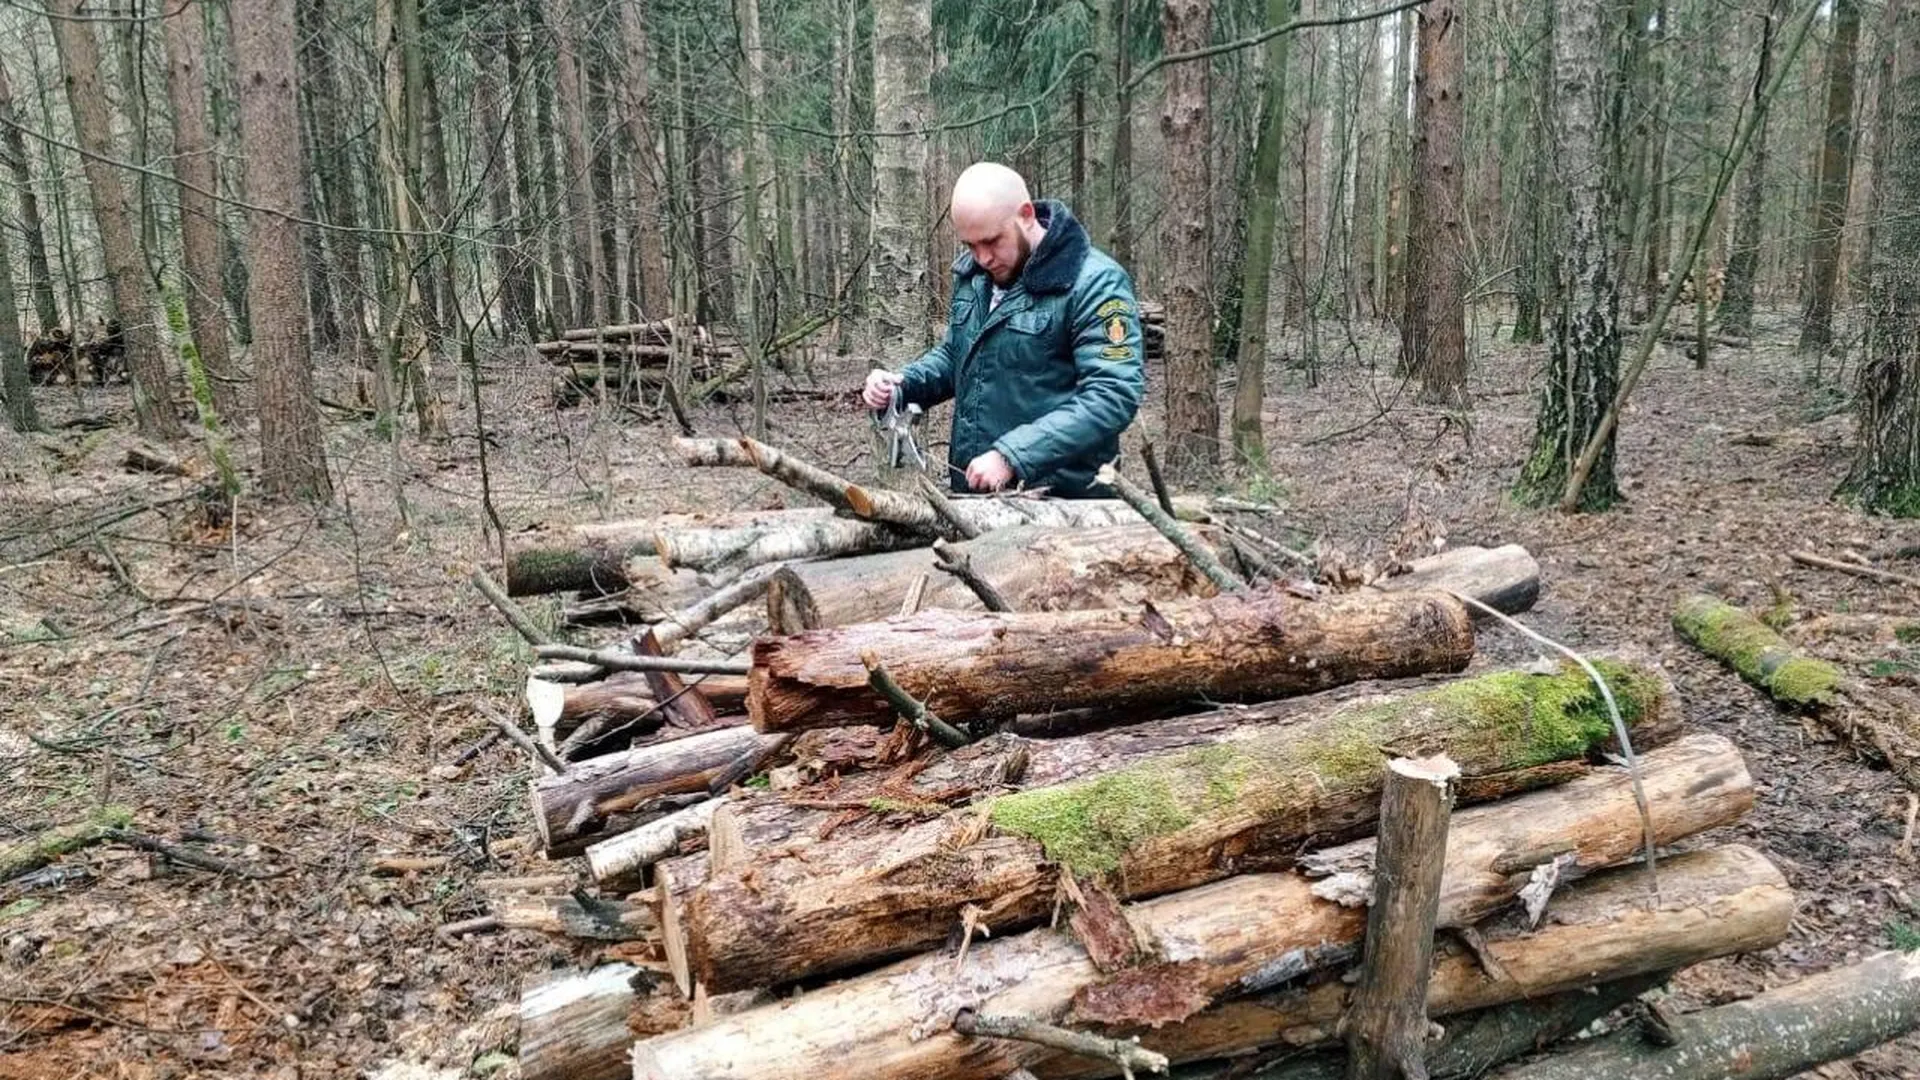 Сухостой и поваленные деревья убрали в Звенигородском лесничестве